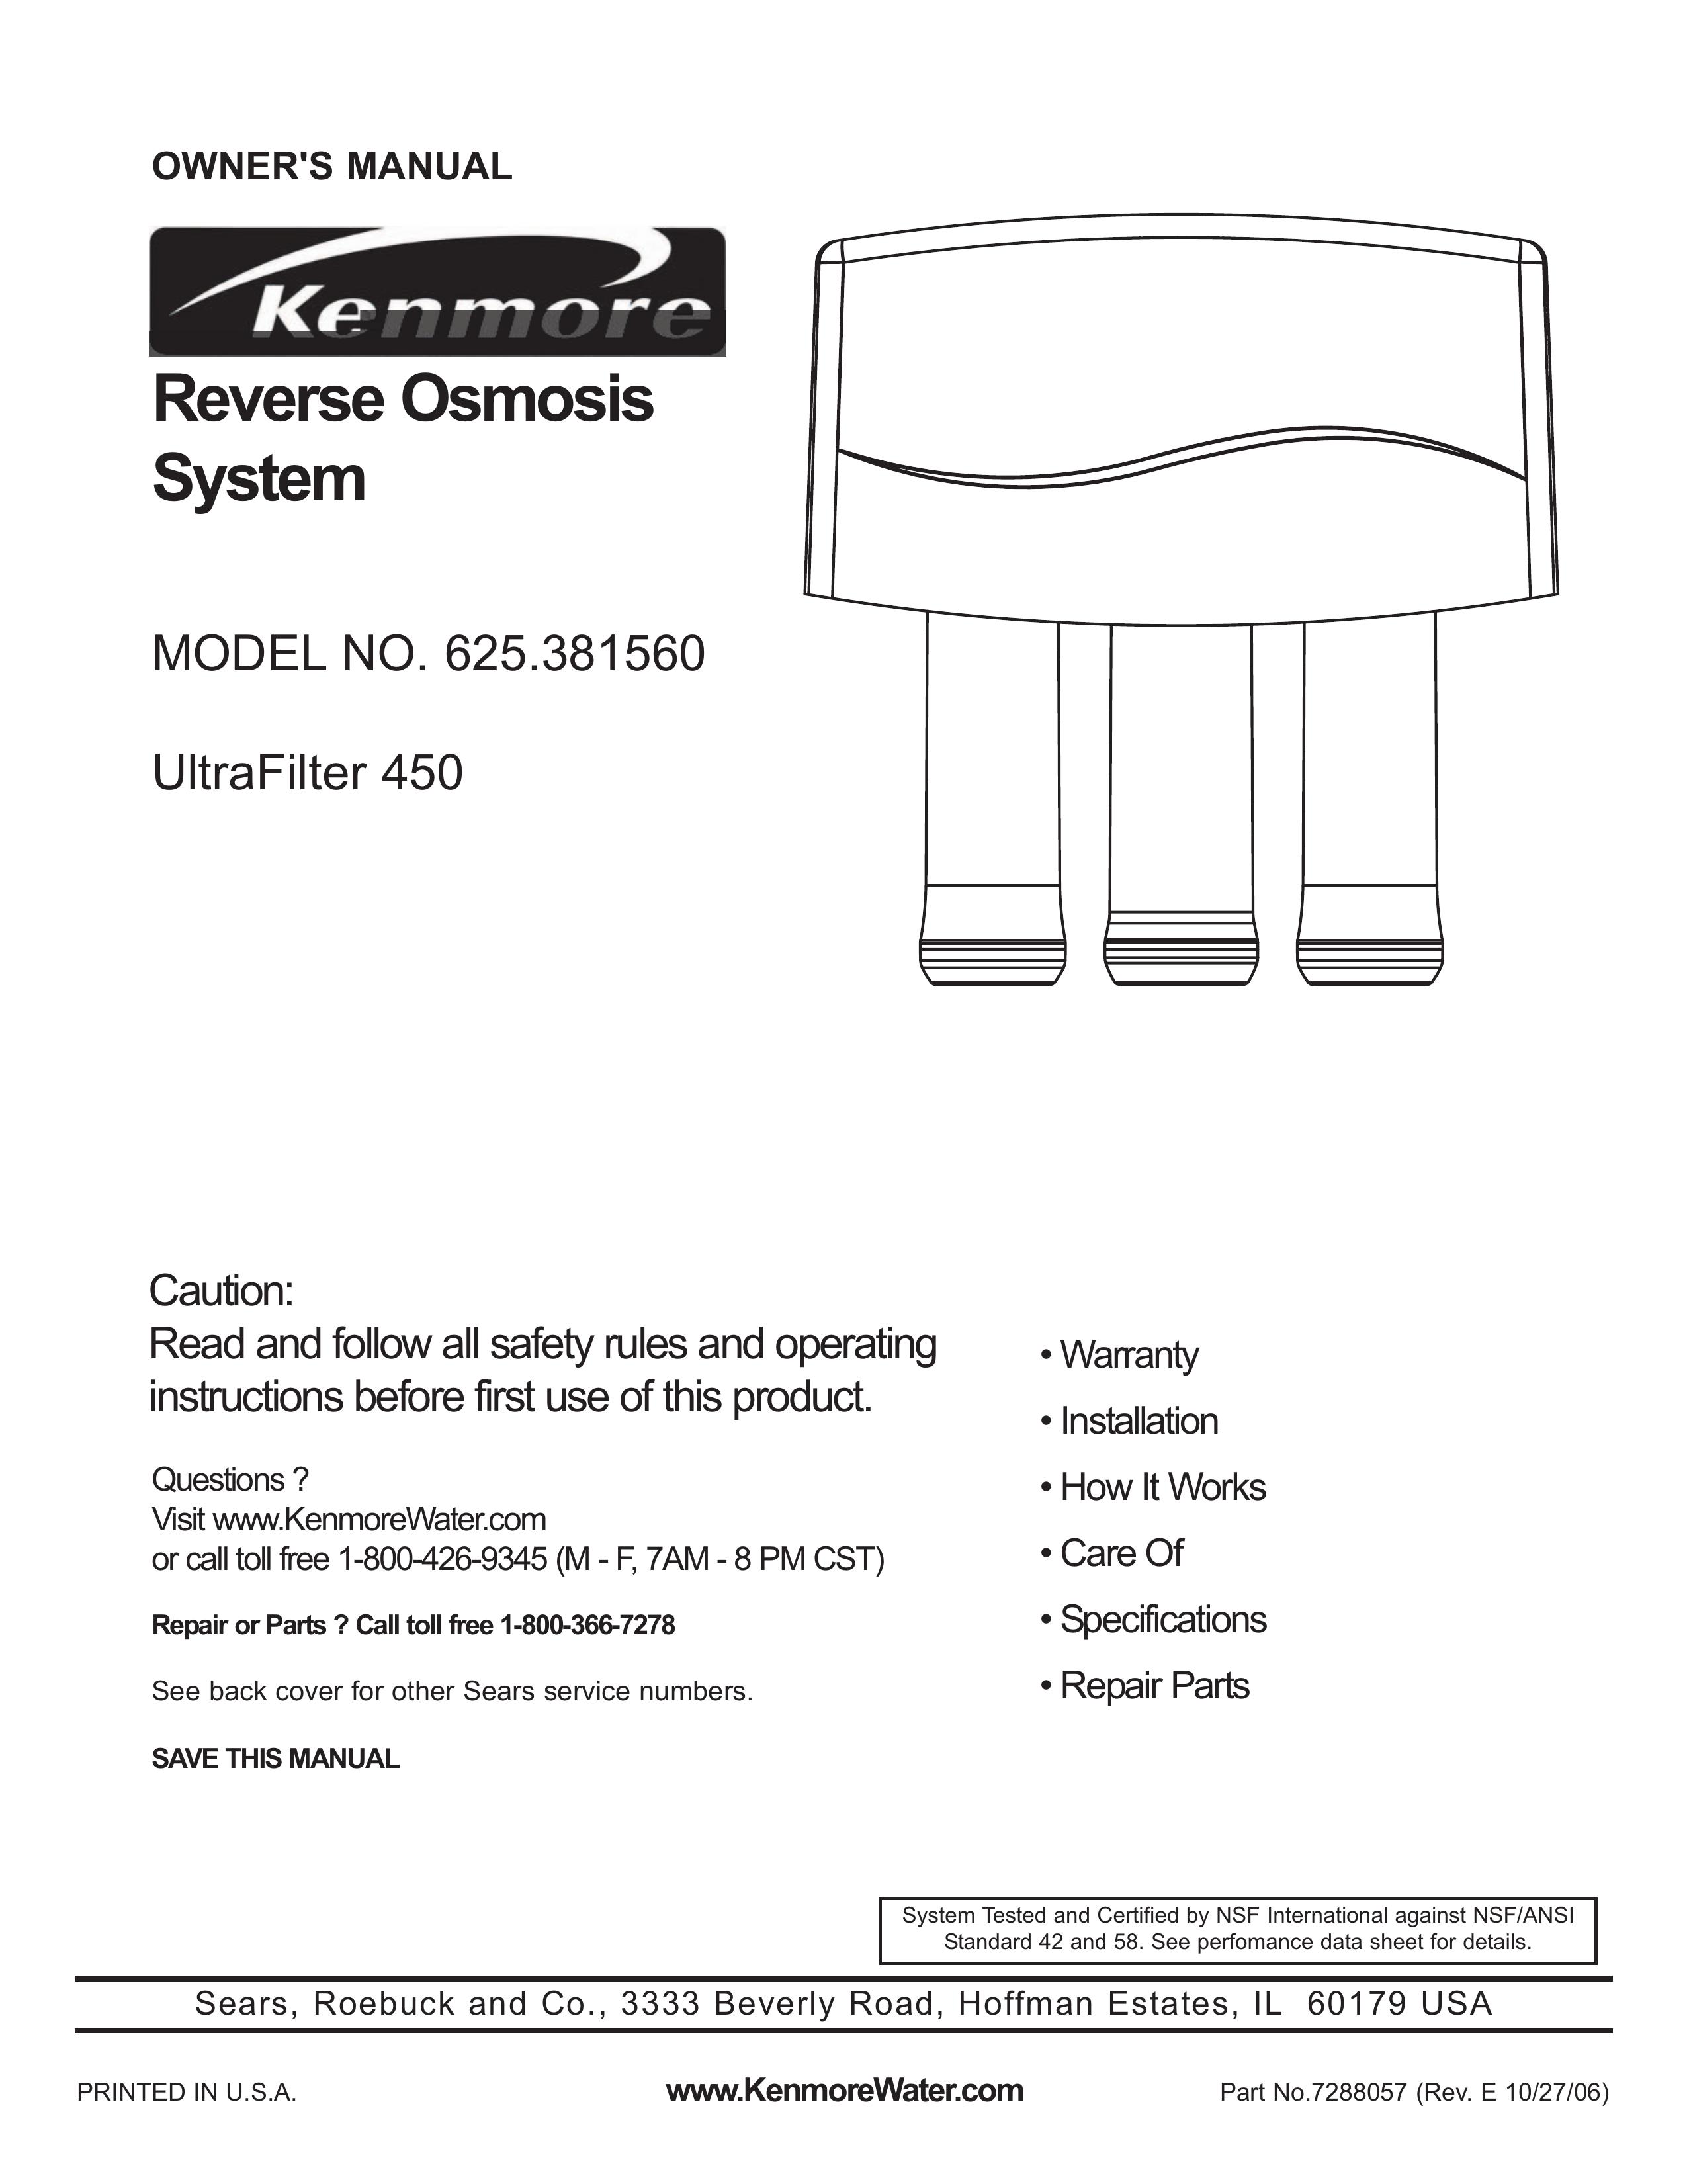 Kenmore 625.381560 Water Dispenser User Manual